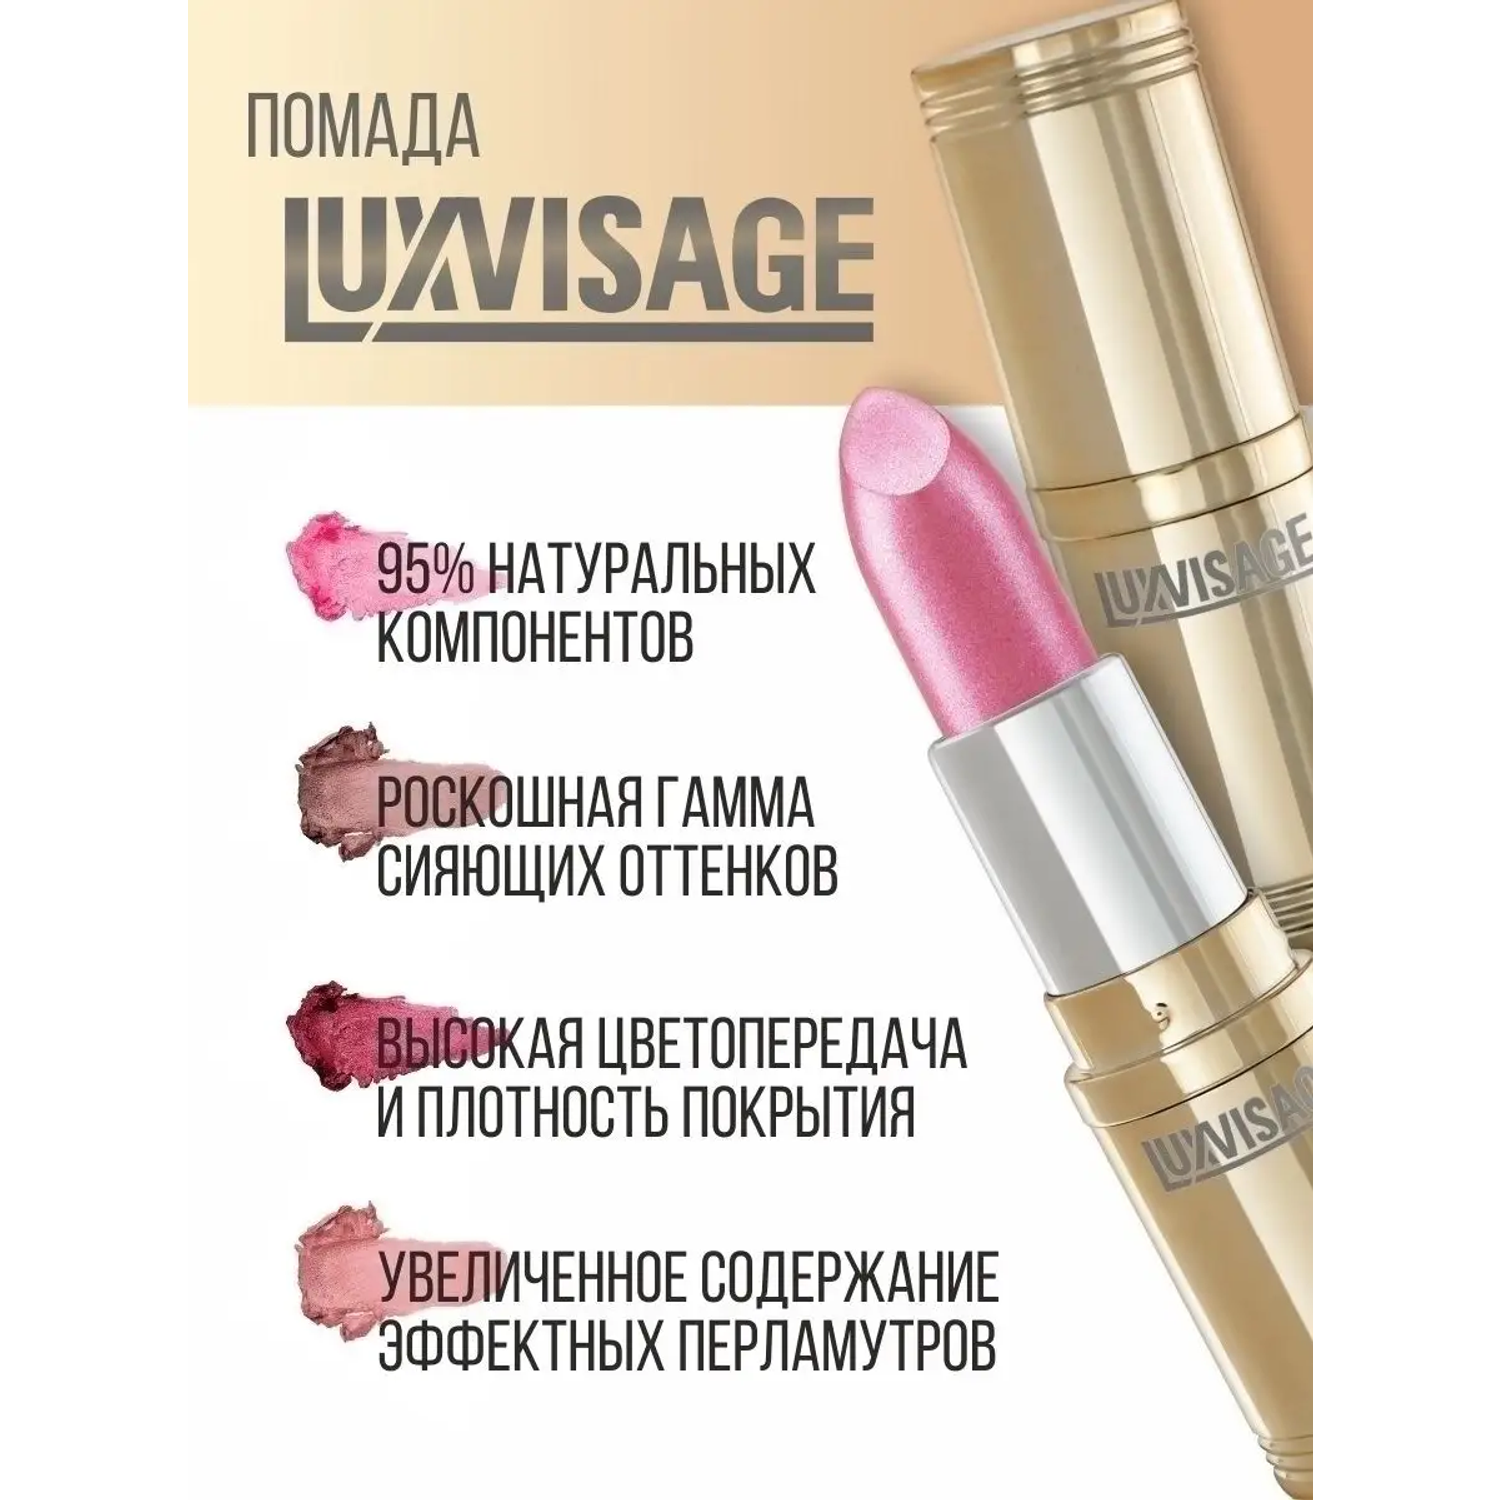 Помада для губ Luxvisage Перламутровая Тон 3 холодный розовый 4 г - фото 8